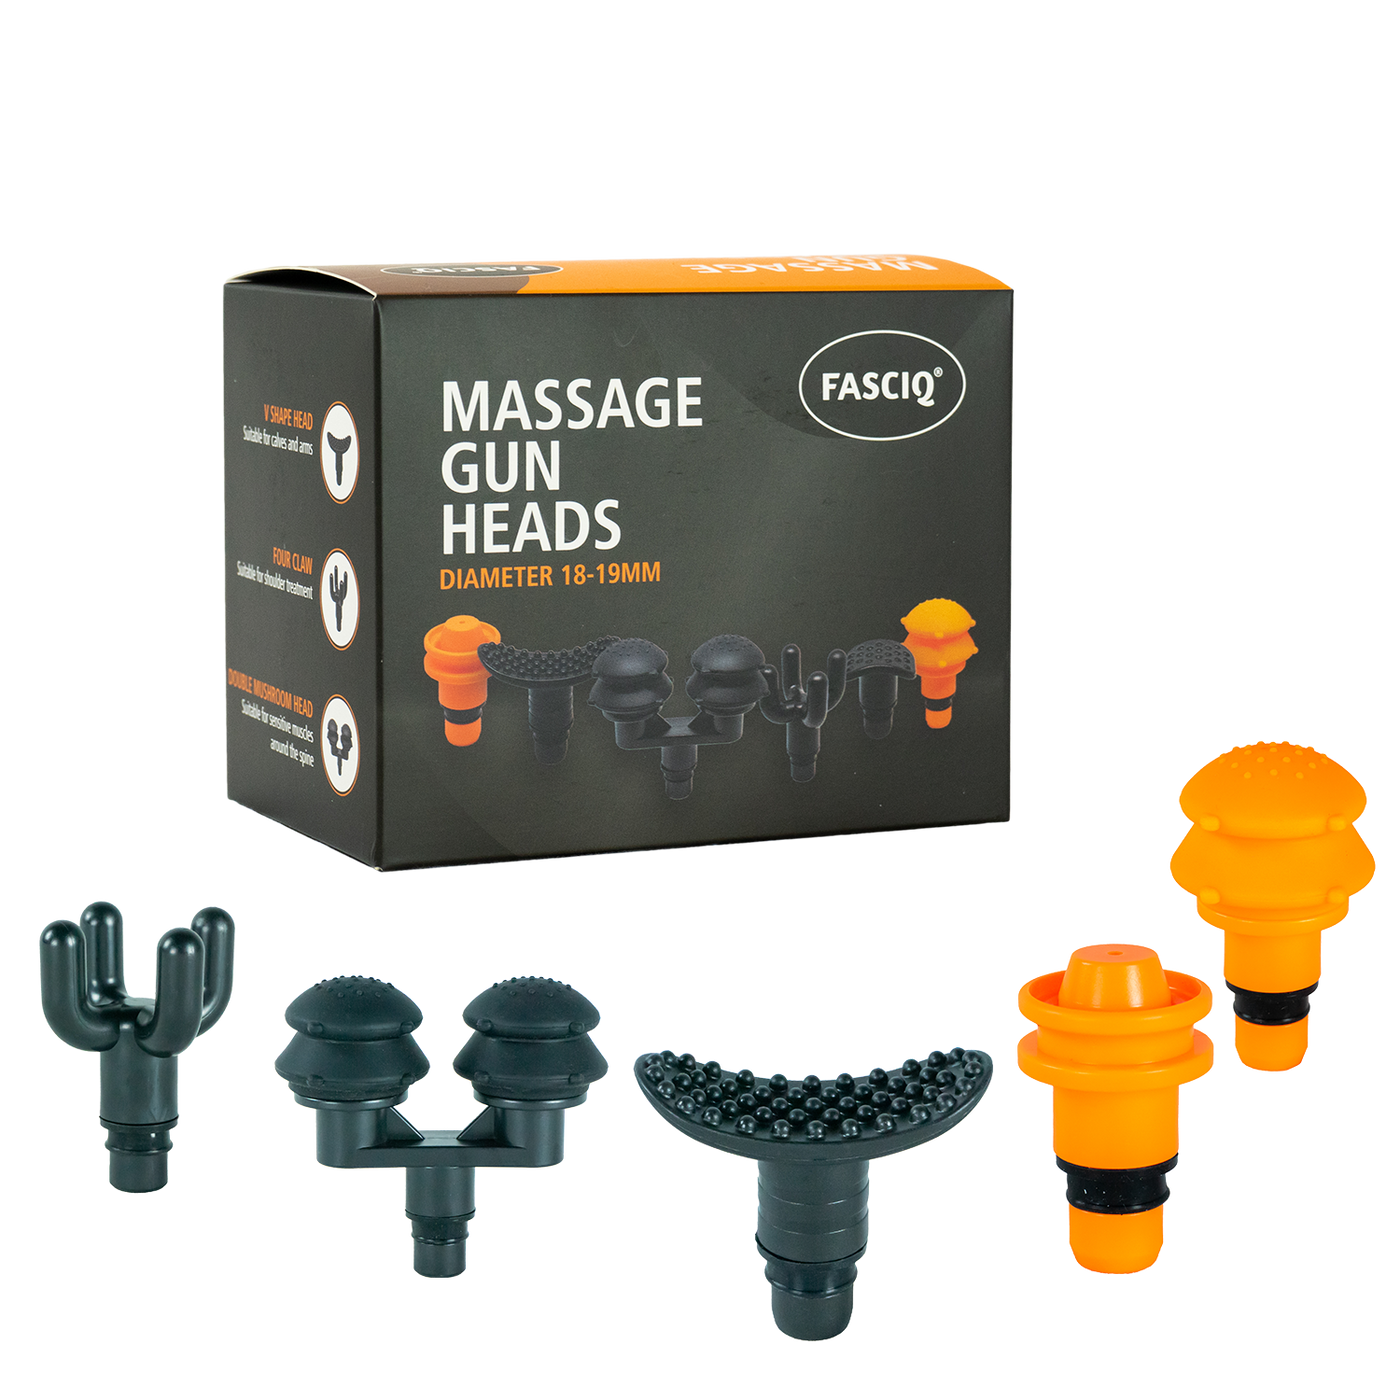 Massasjepistol og Manuelt Massasjeverktøy - Fasciq ekstra massasjehoder til Massage Gun mini